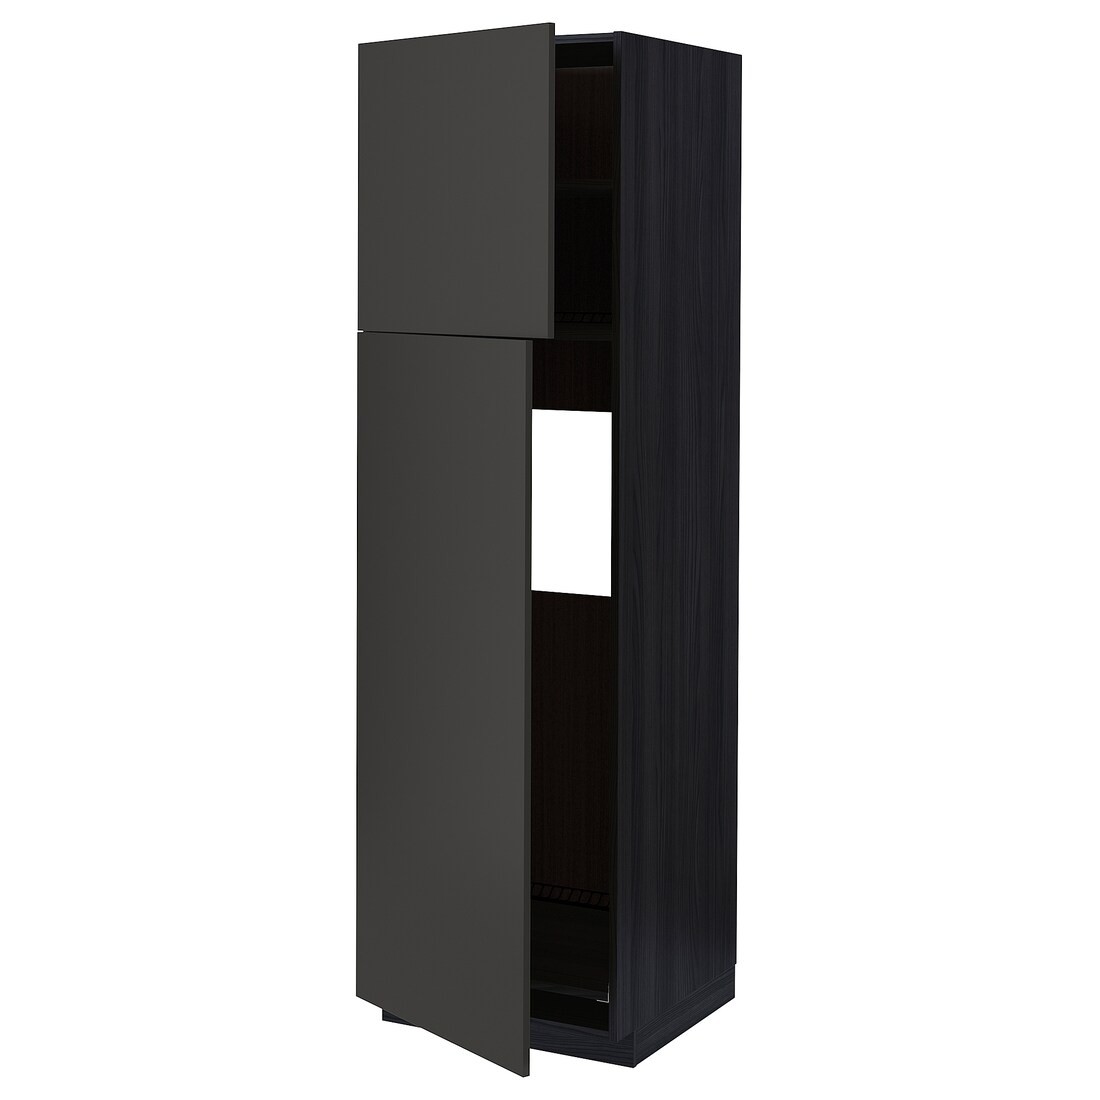 IKEA METOD МЕТОД Висока шафа для холодильника, чорний / Nickebo матовий антрацит, 60x60x200 см 19497745 | 194.977.45